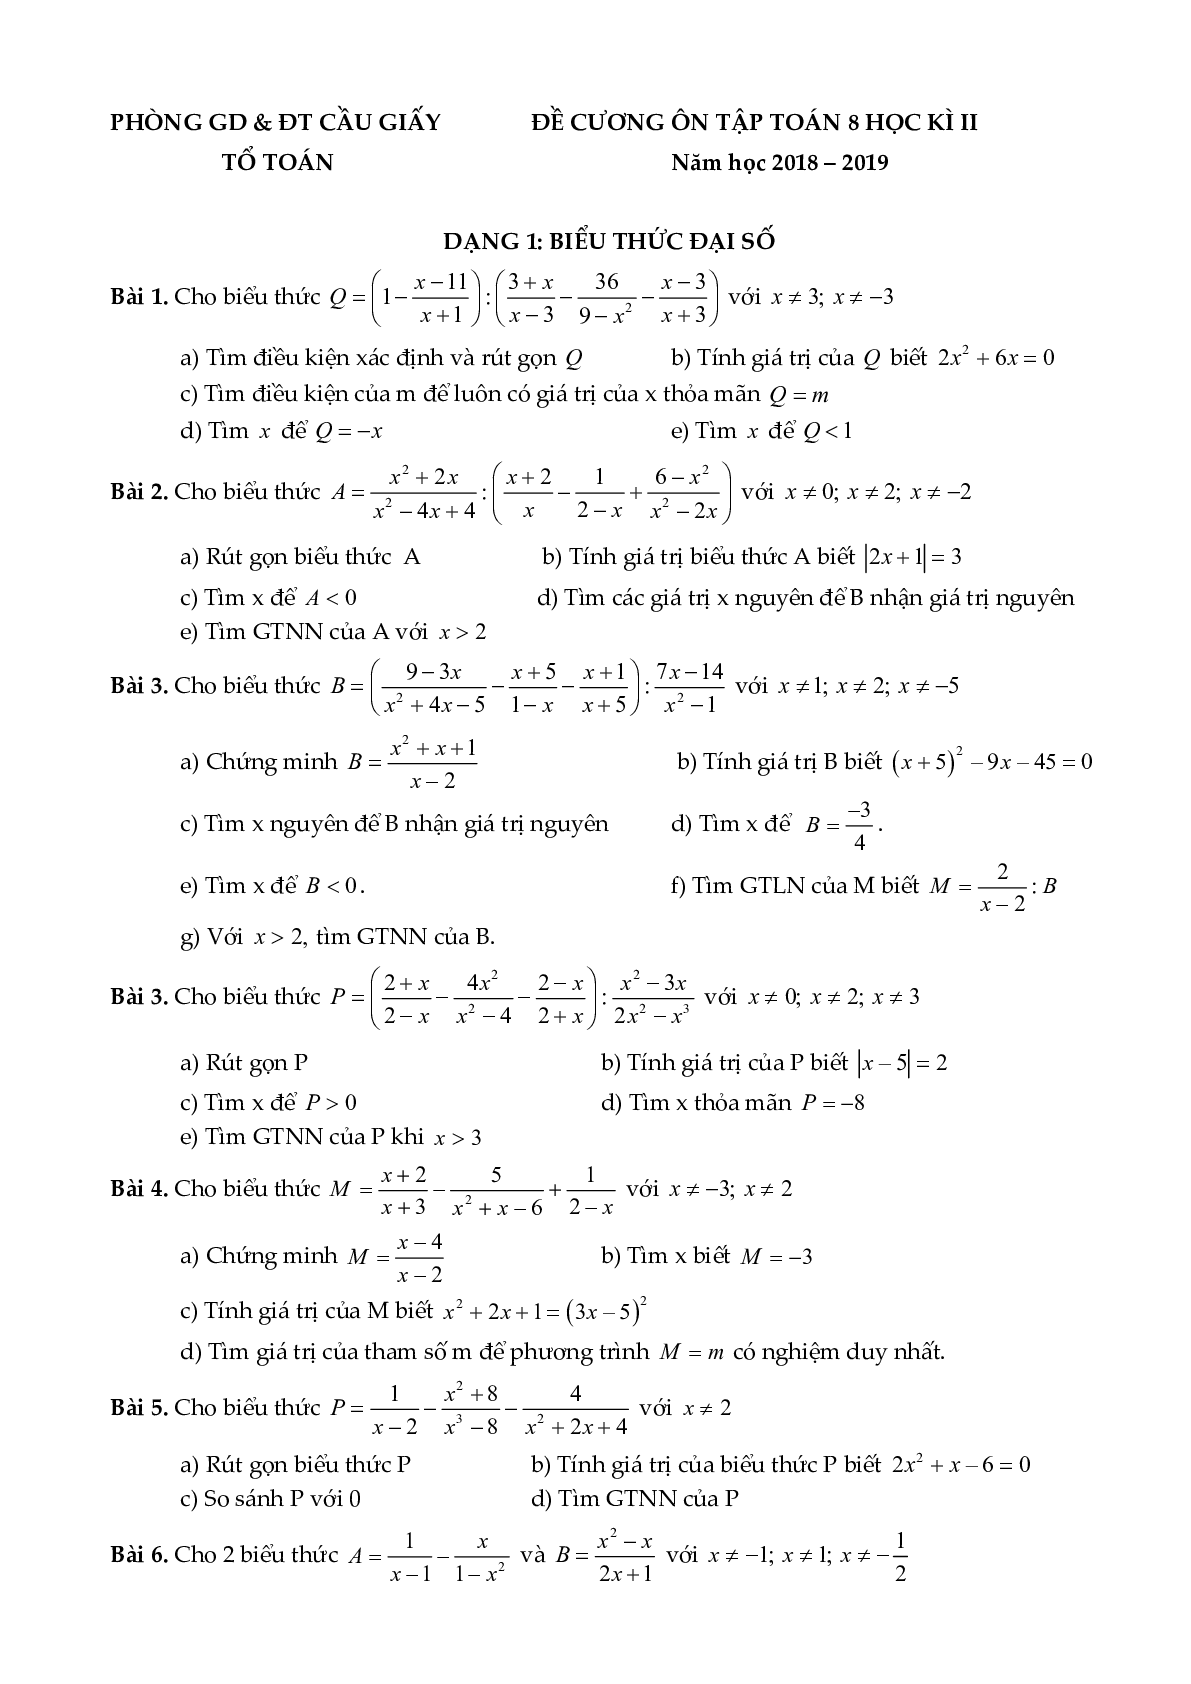 Đề cương ôn tập học kỳ II môn toán 8 năm học 2018-2019 Phòng GDĐT Cầu Giấy - Hà Nội (trang 1)